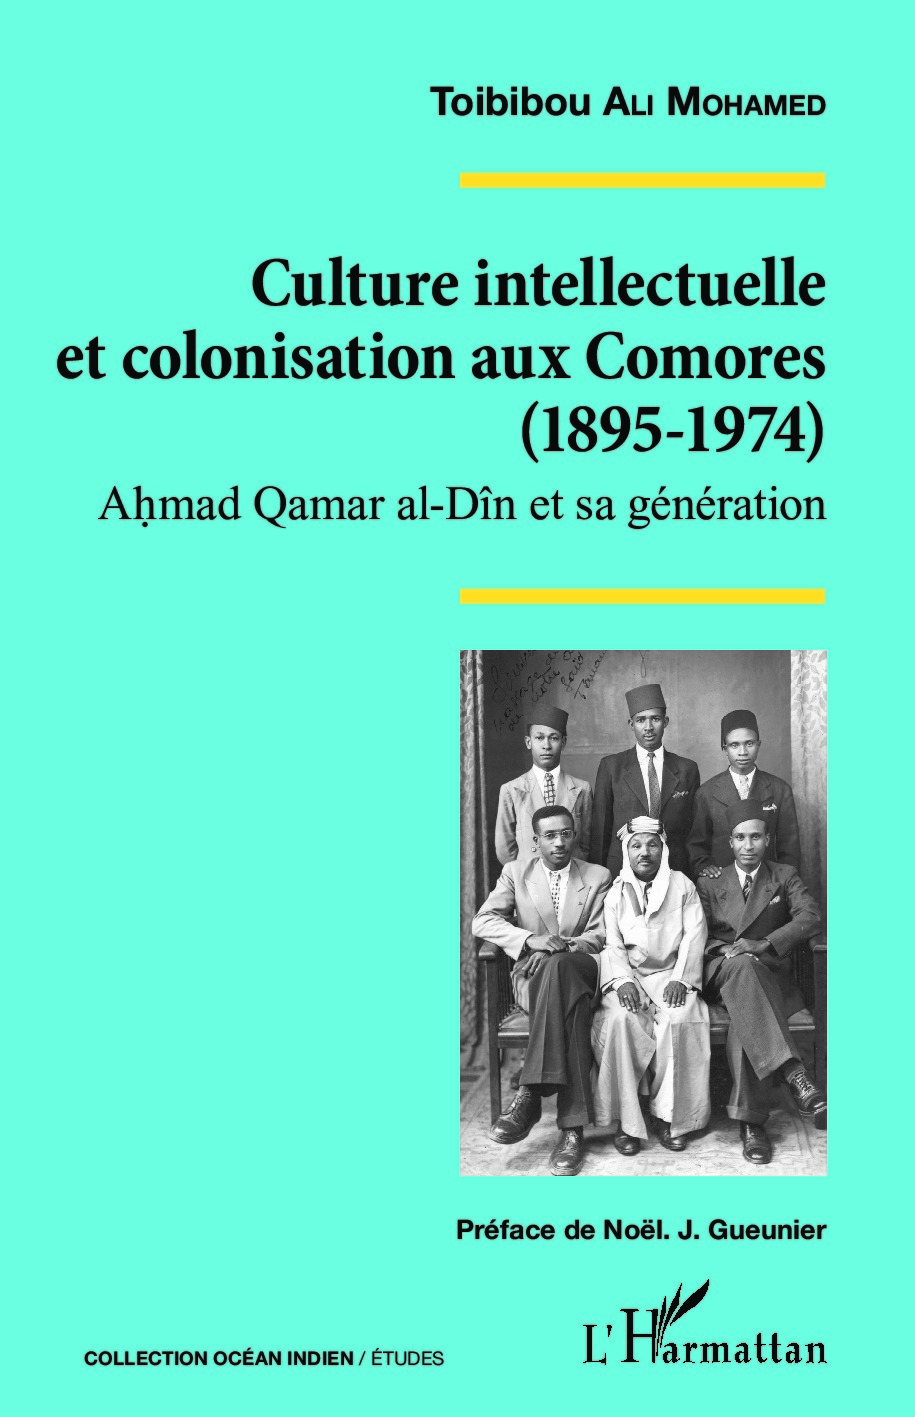 Culture intellectuelle et colonisation aux Comores (1895-1974), Ahmad Qamar al-Dîn et sa génération (9782343078236-front-cover)